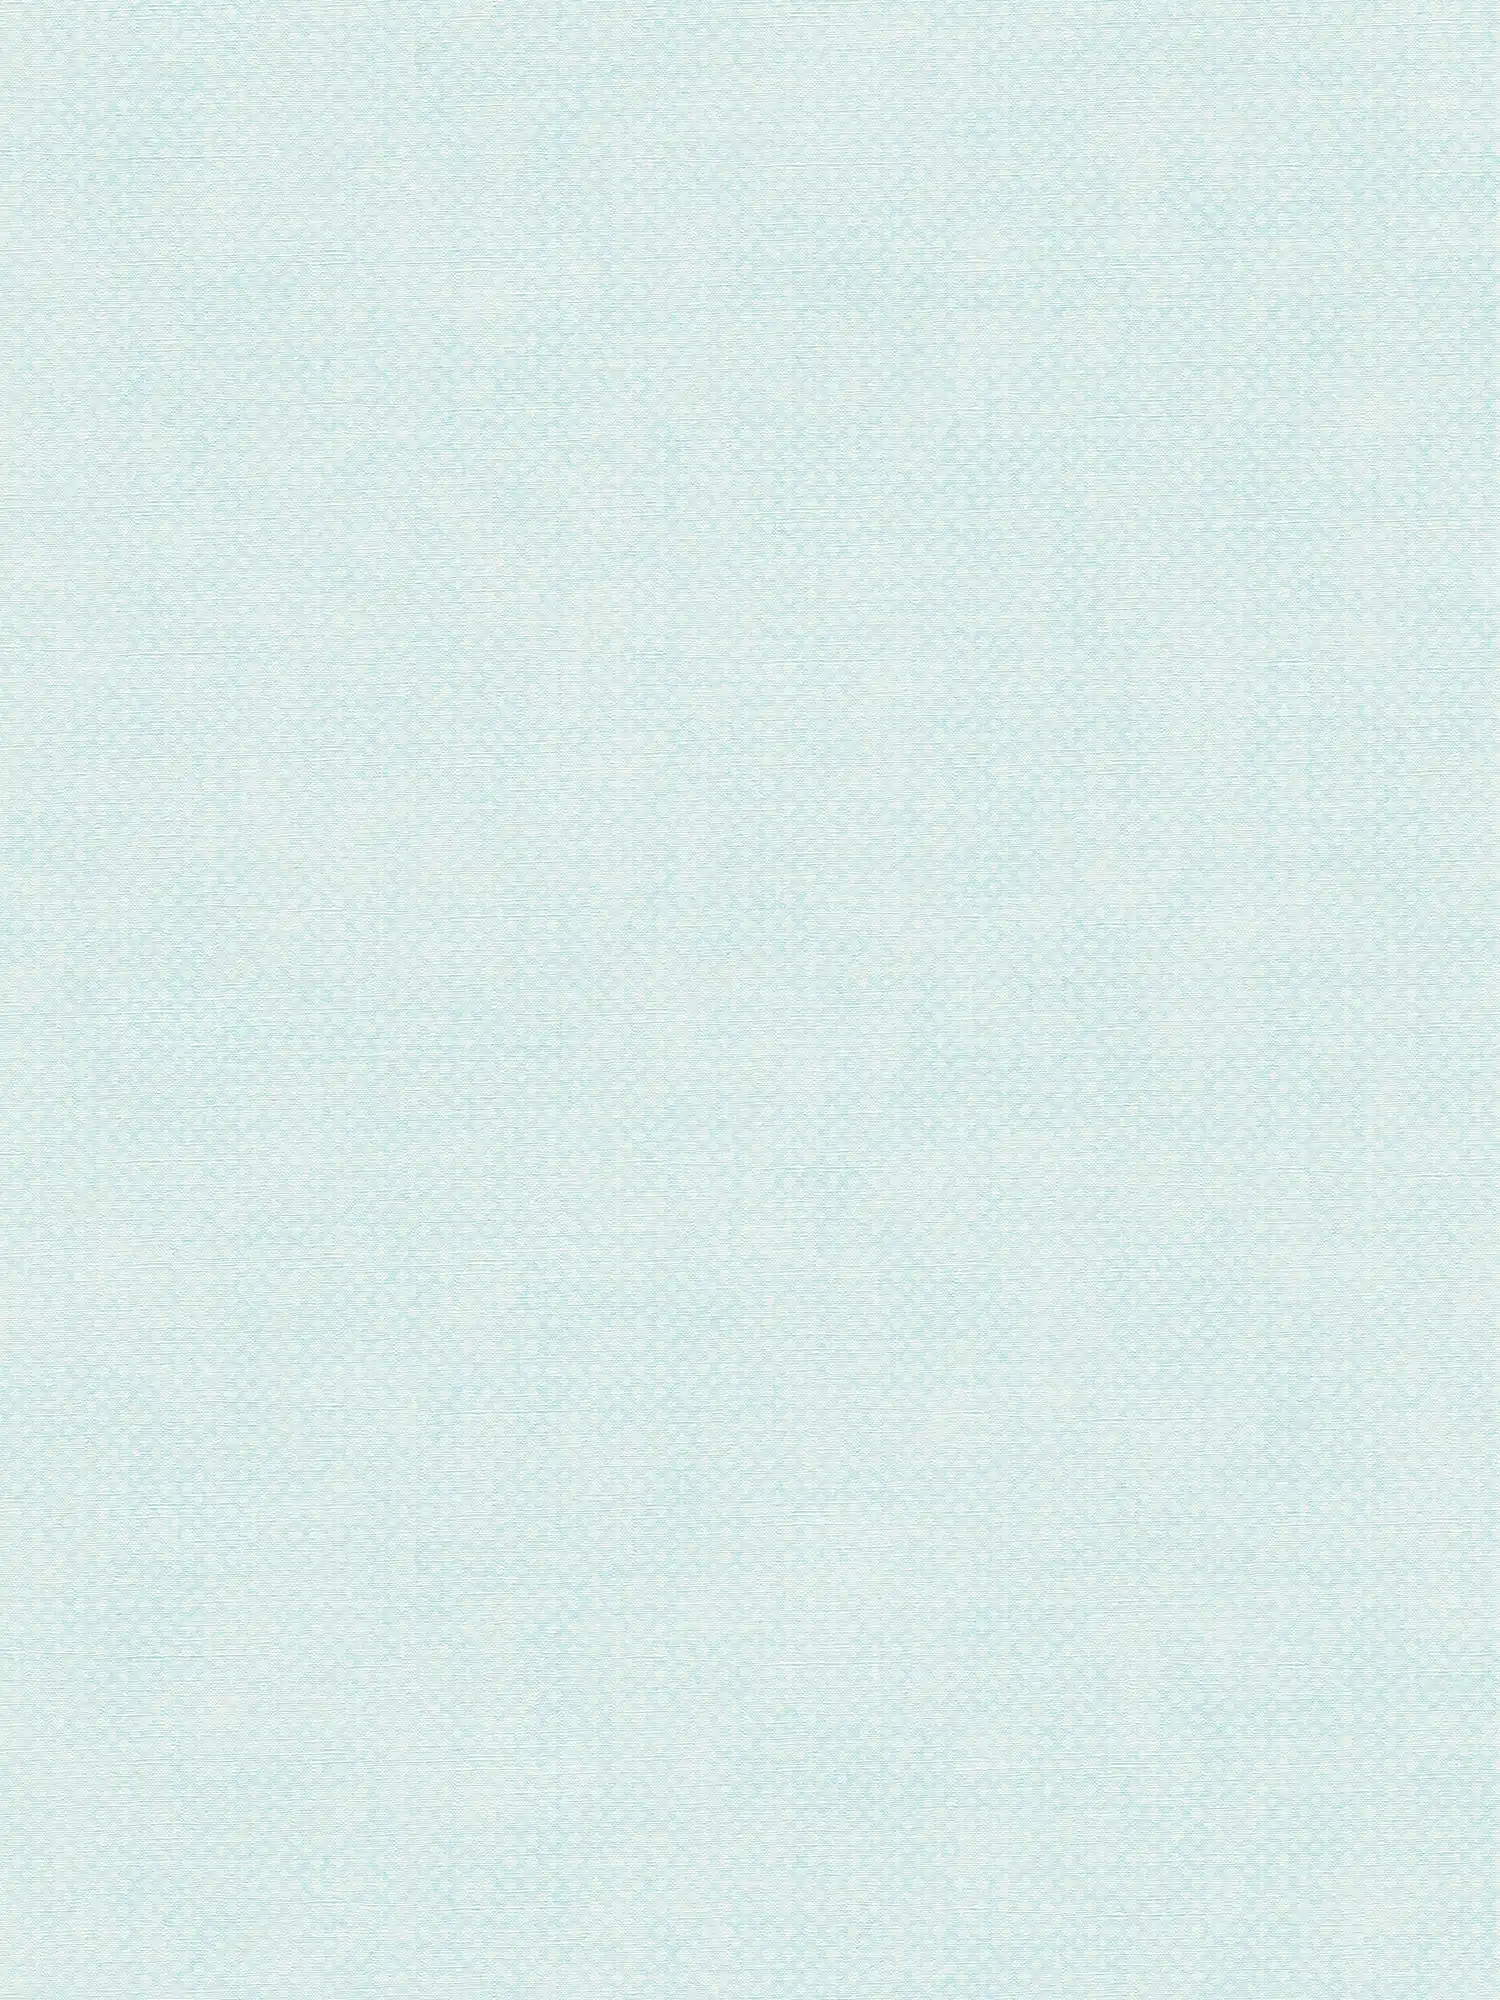 Papel pintado no tejido con textura fina - azul, blanco
